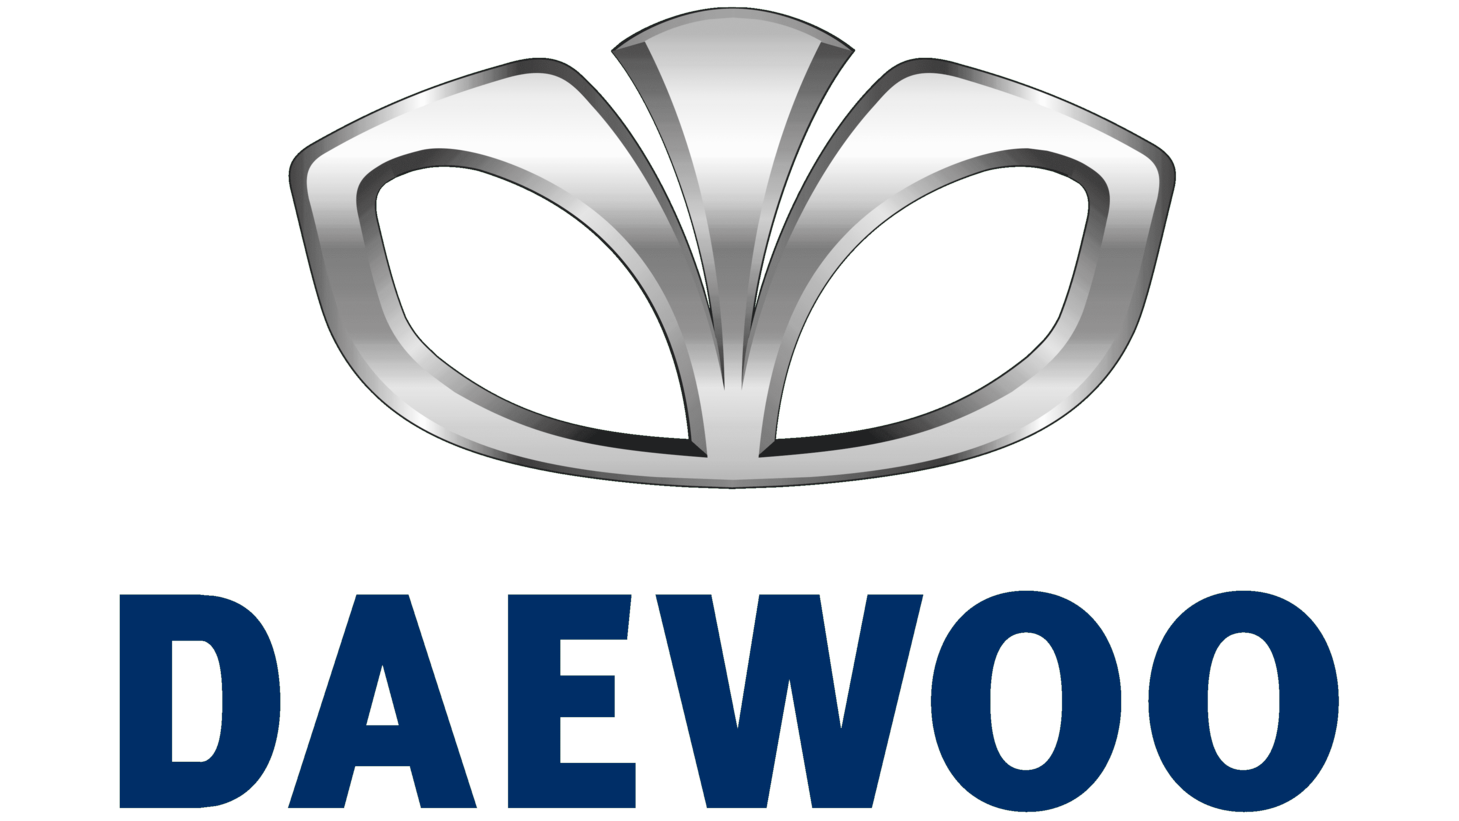 Daewoo sign 2002 2016